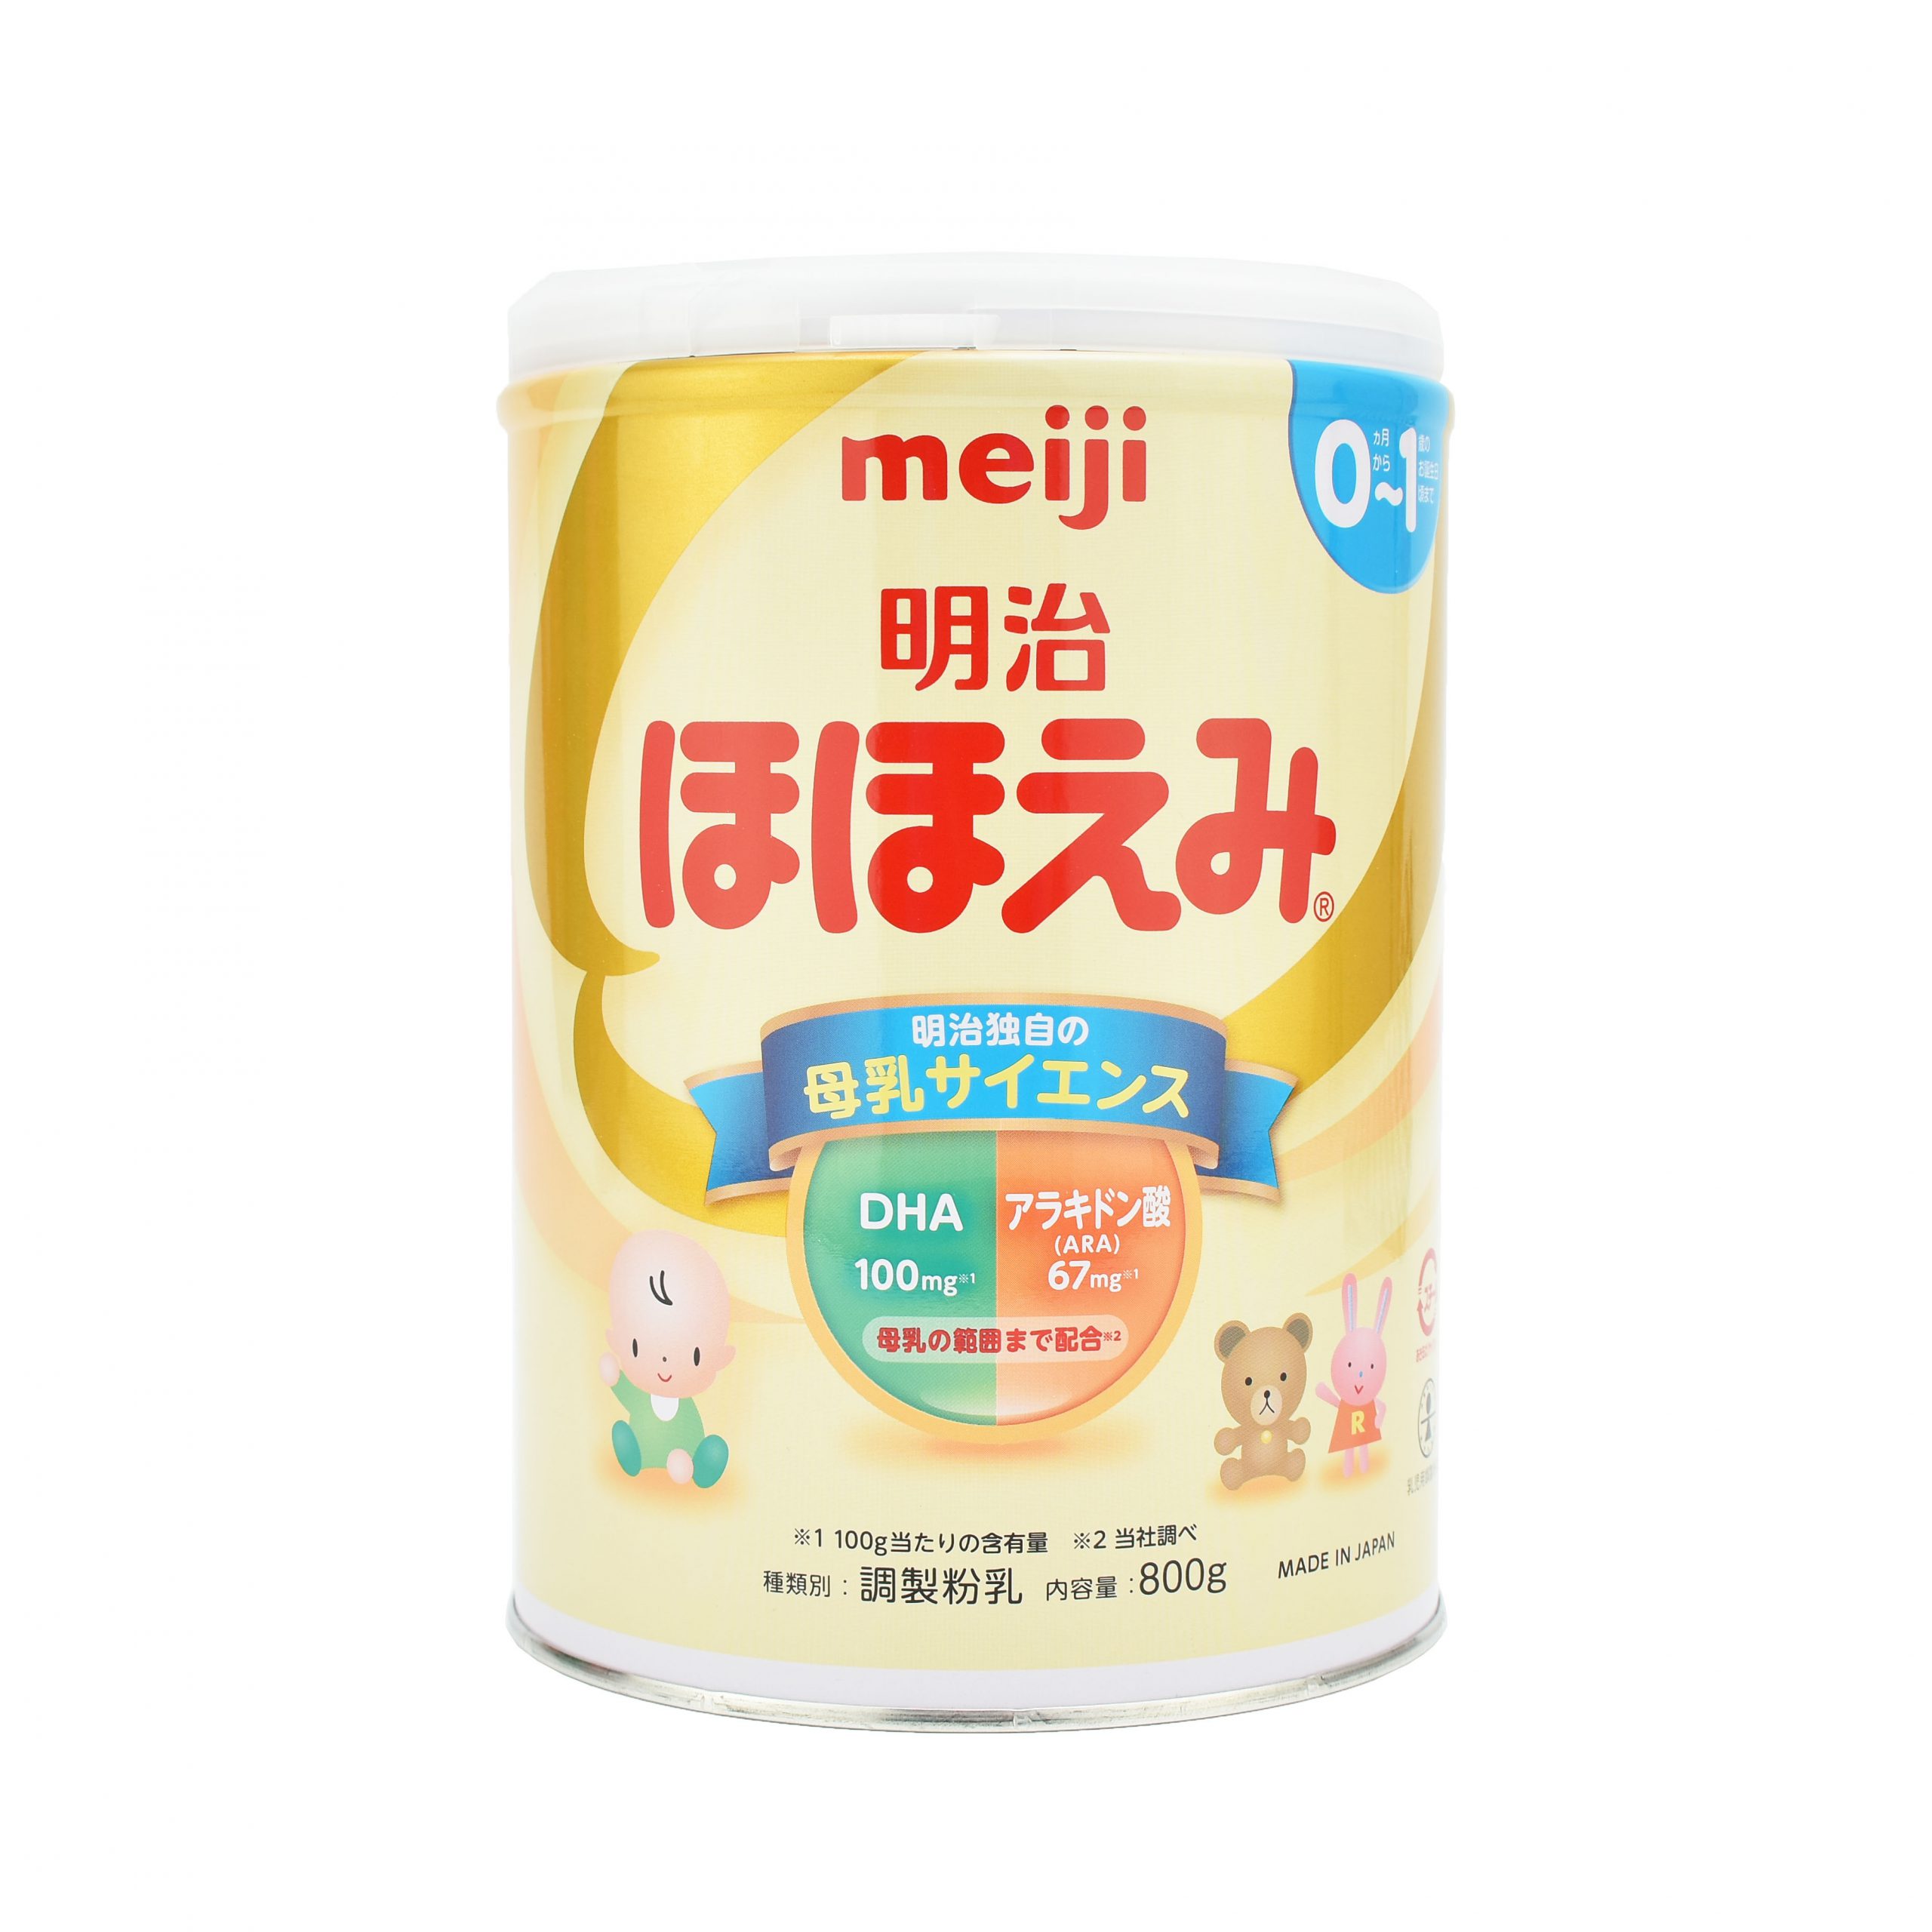 sữa Meiji 01 nội địa 800g cho bé từ 0-12 tháng tuổi